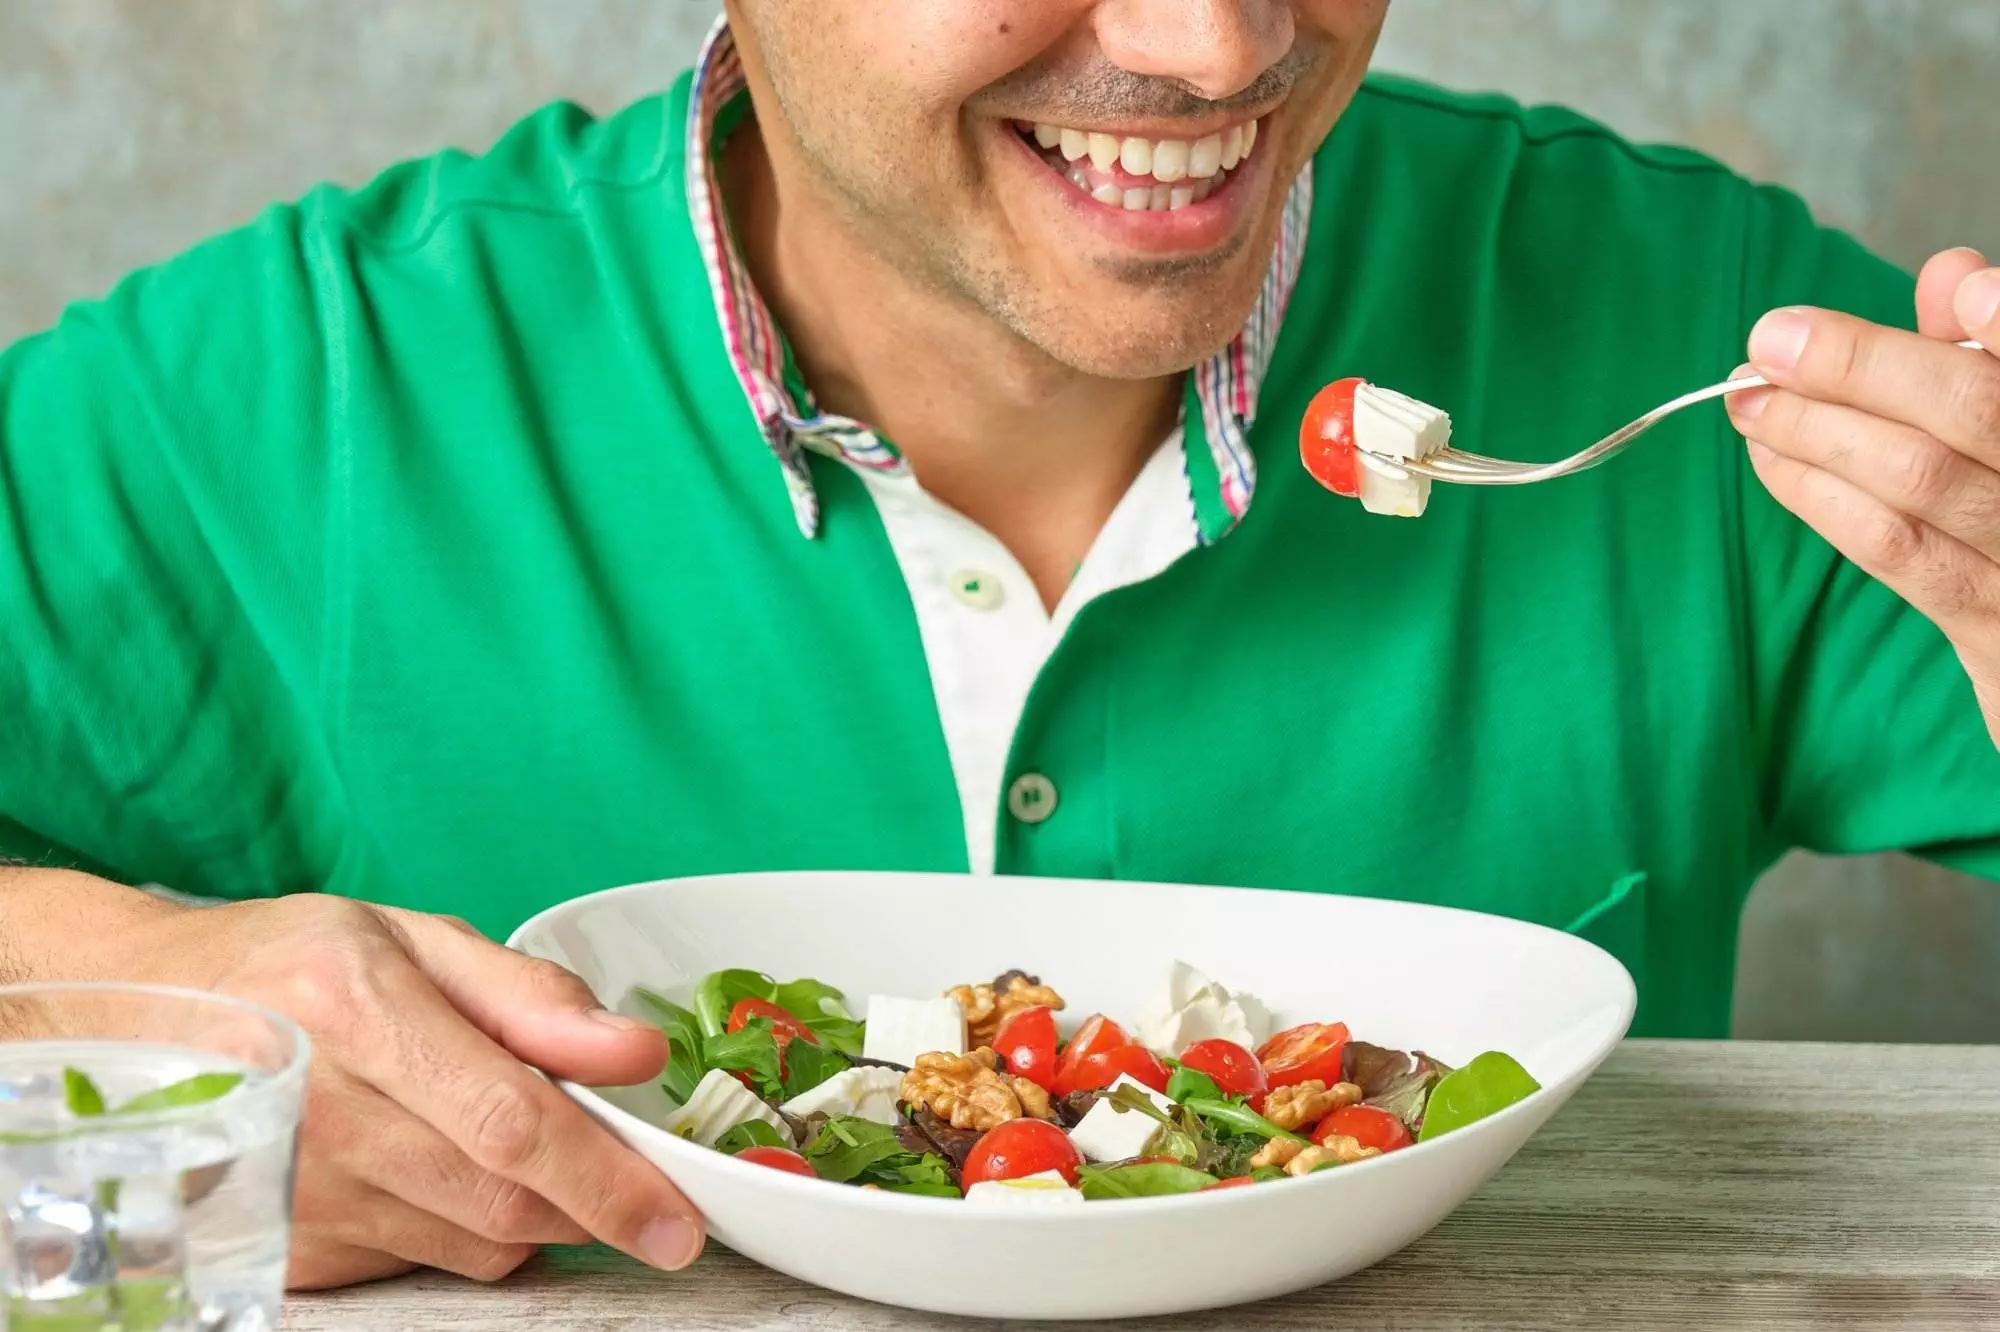 Man smiling while eating fresh salad.